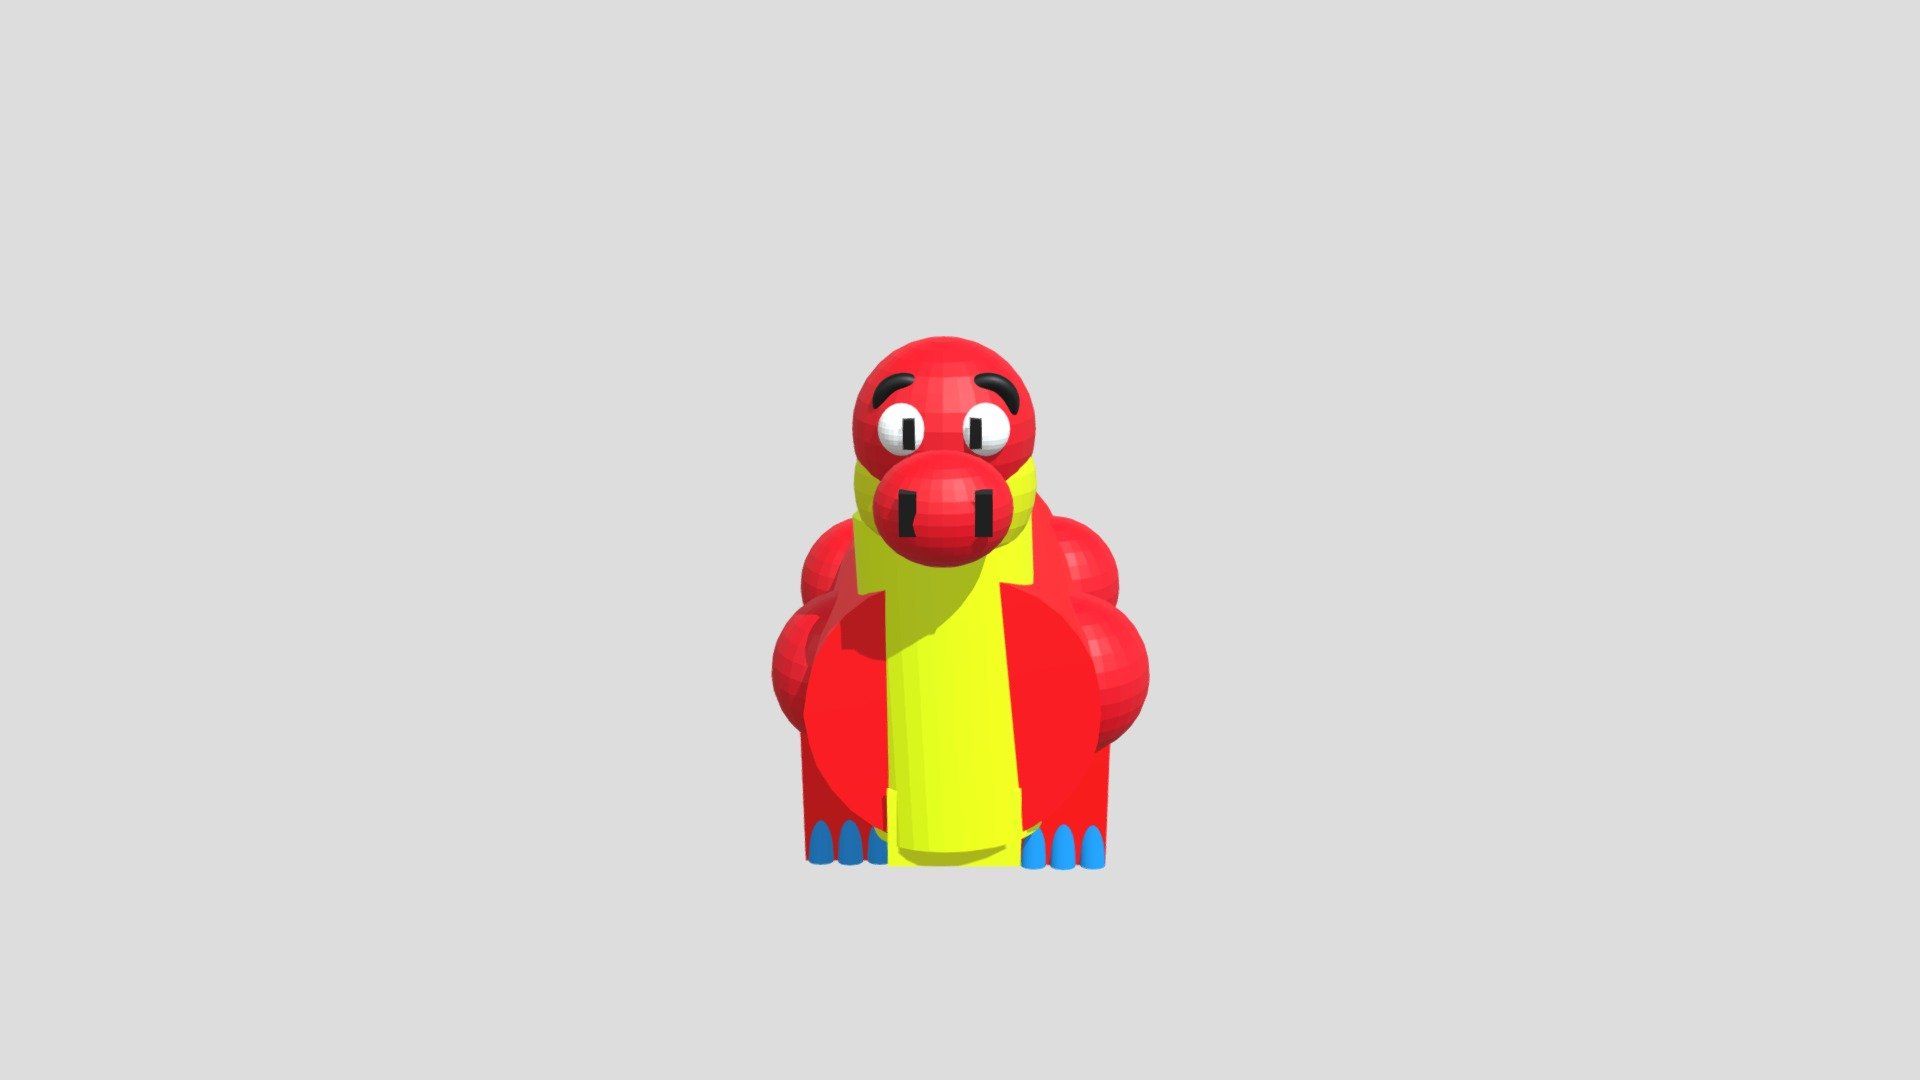 Poppy-playtime 3D models - Sketchfab